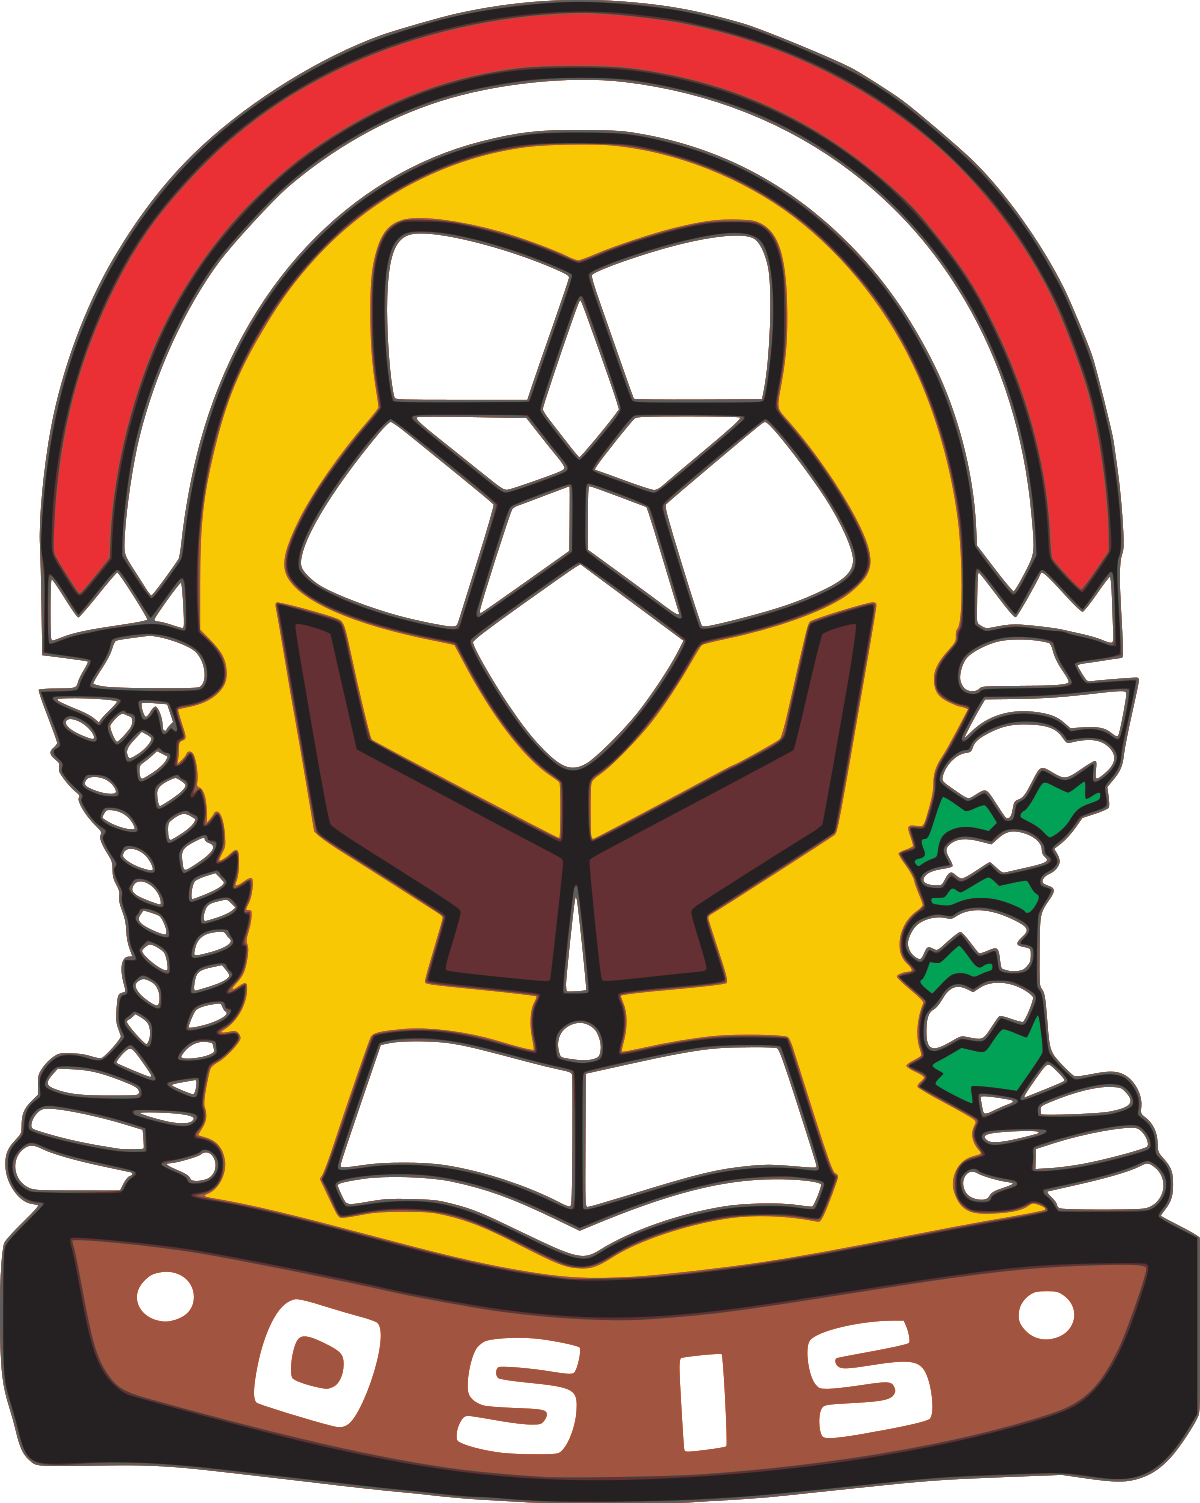 Logo Osis Sma Png - KibrisPDR